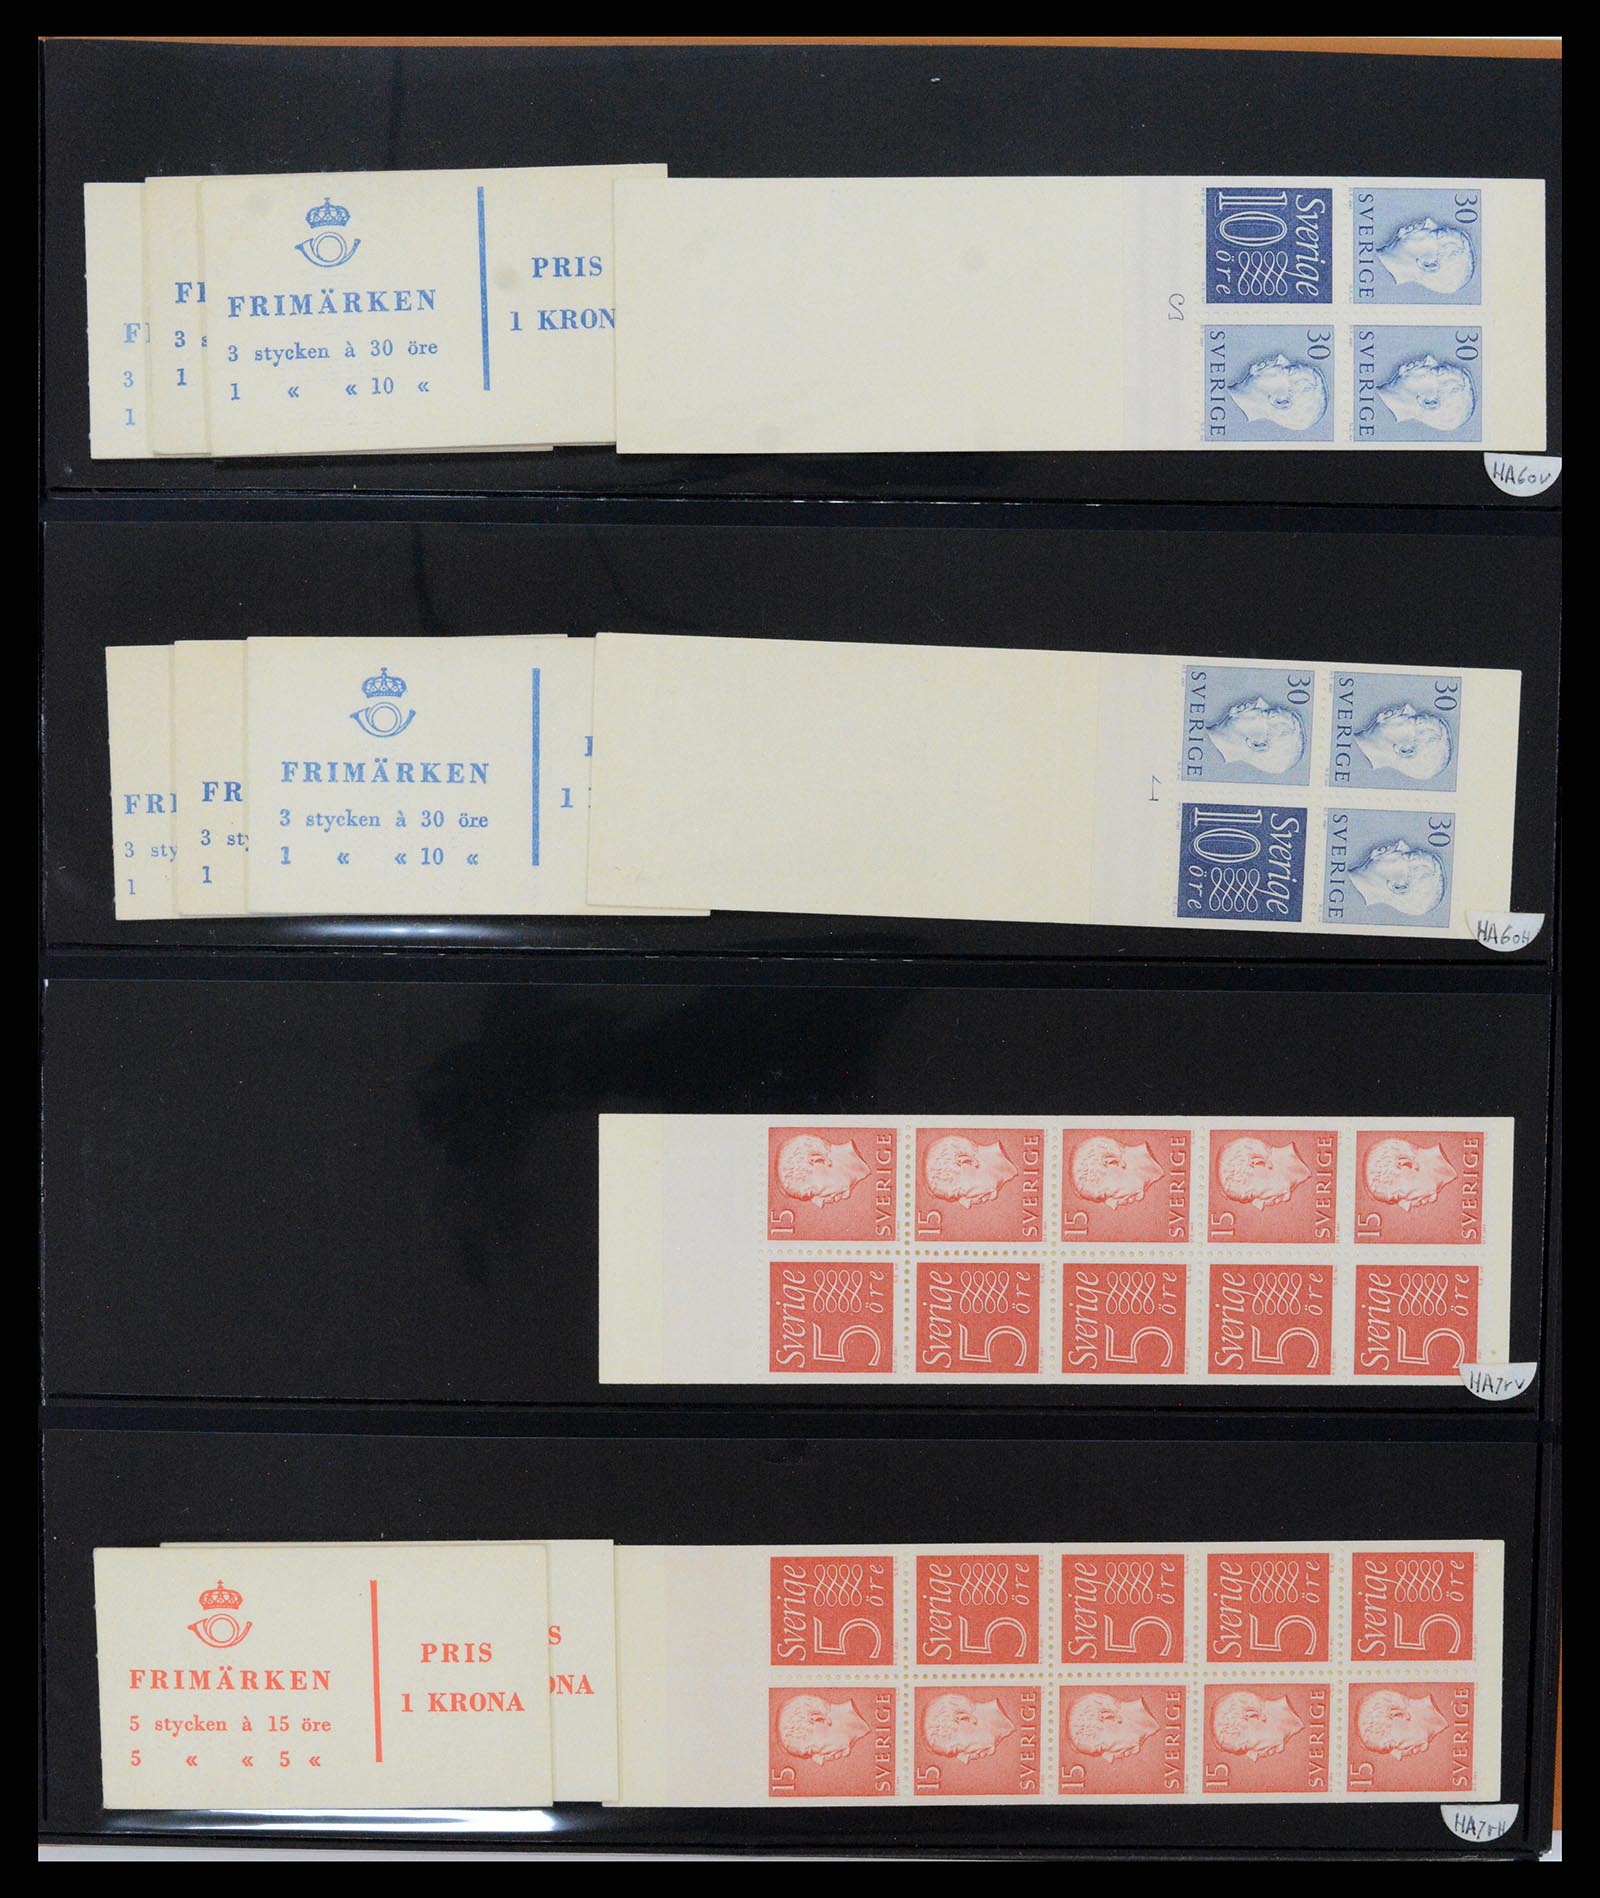 37345 059 - Stamp collection 37345 European countries souvenir sheets.